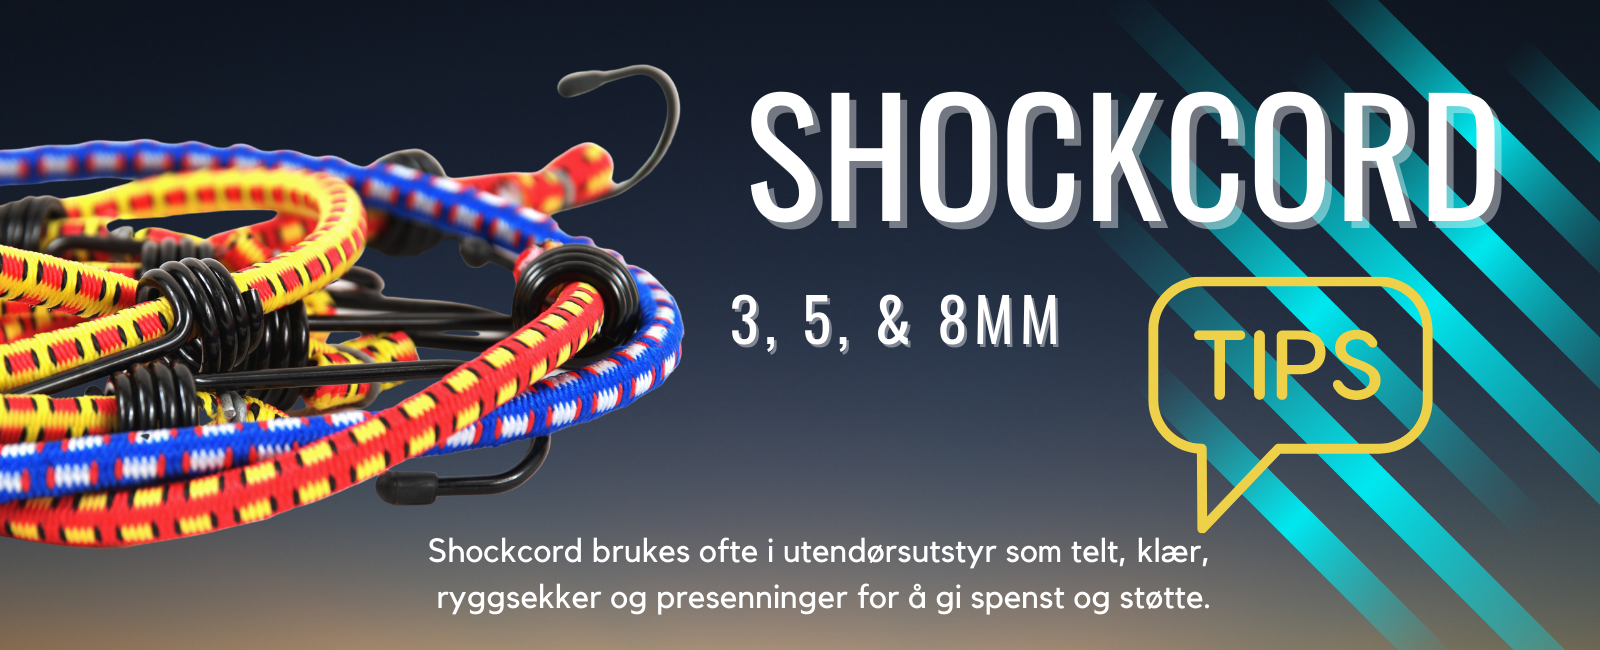 Shockcord strikk